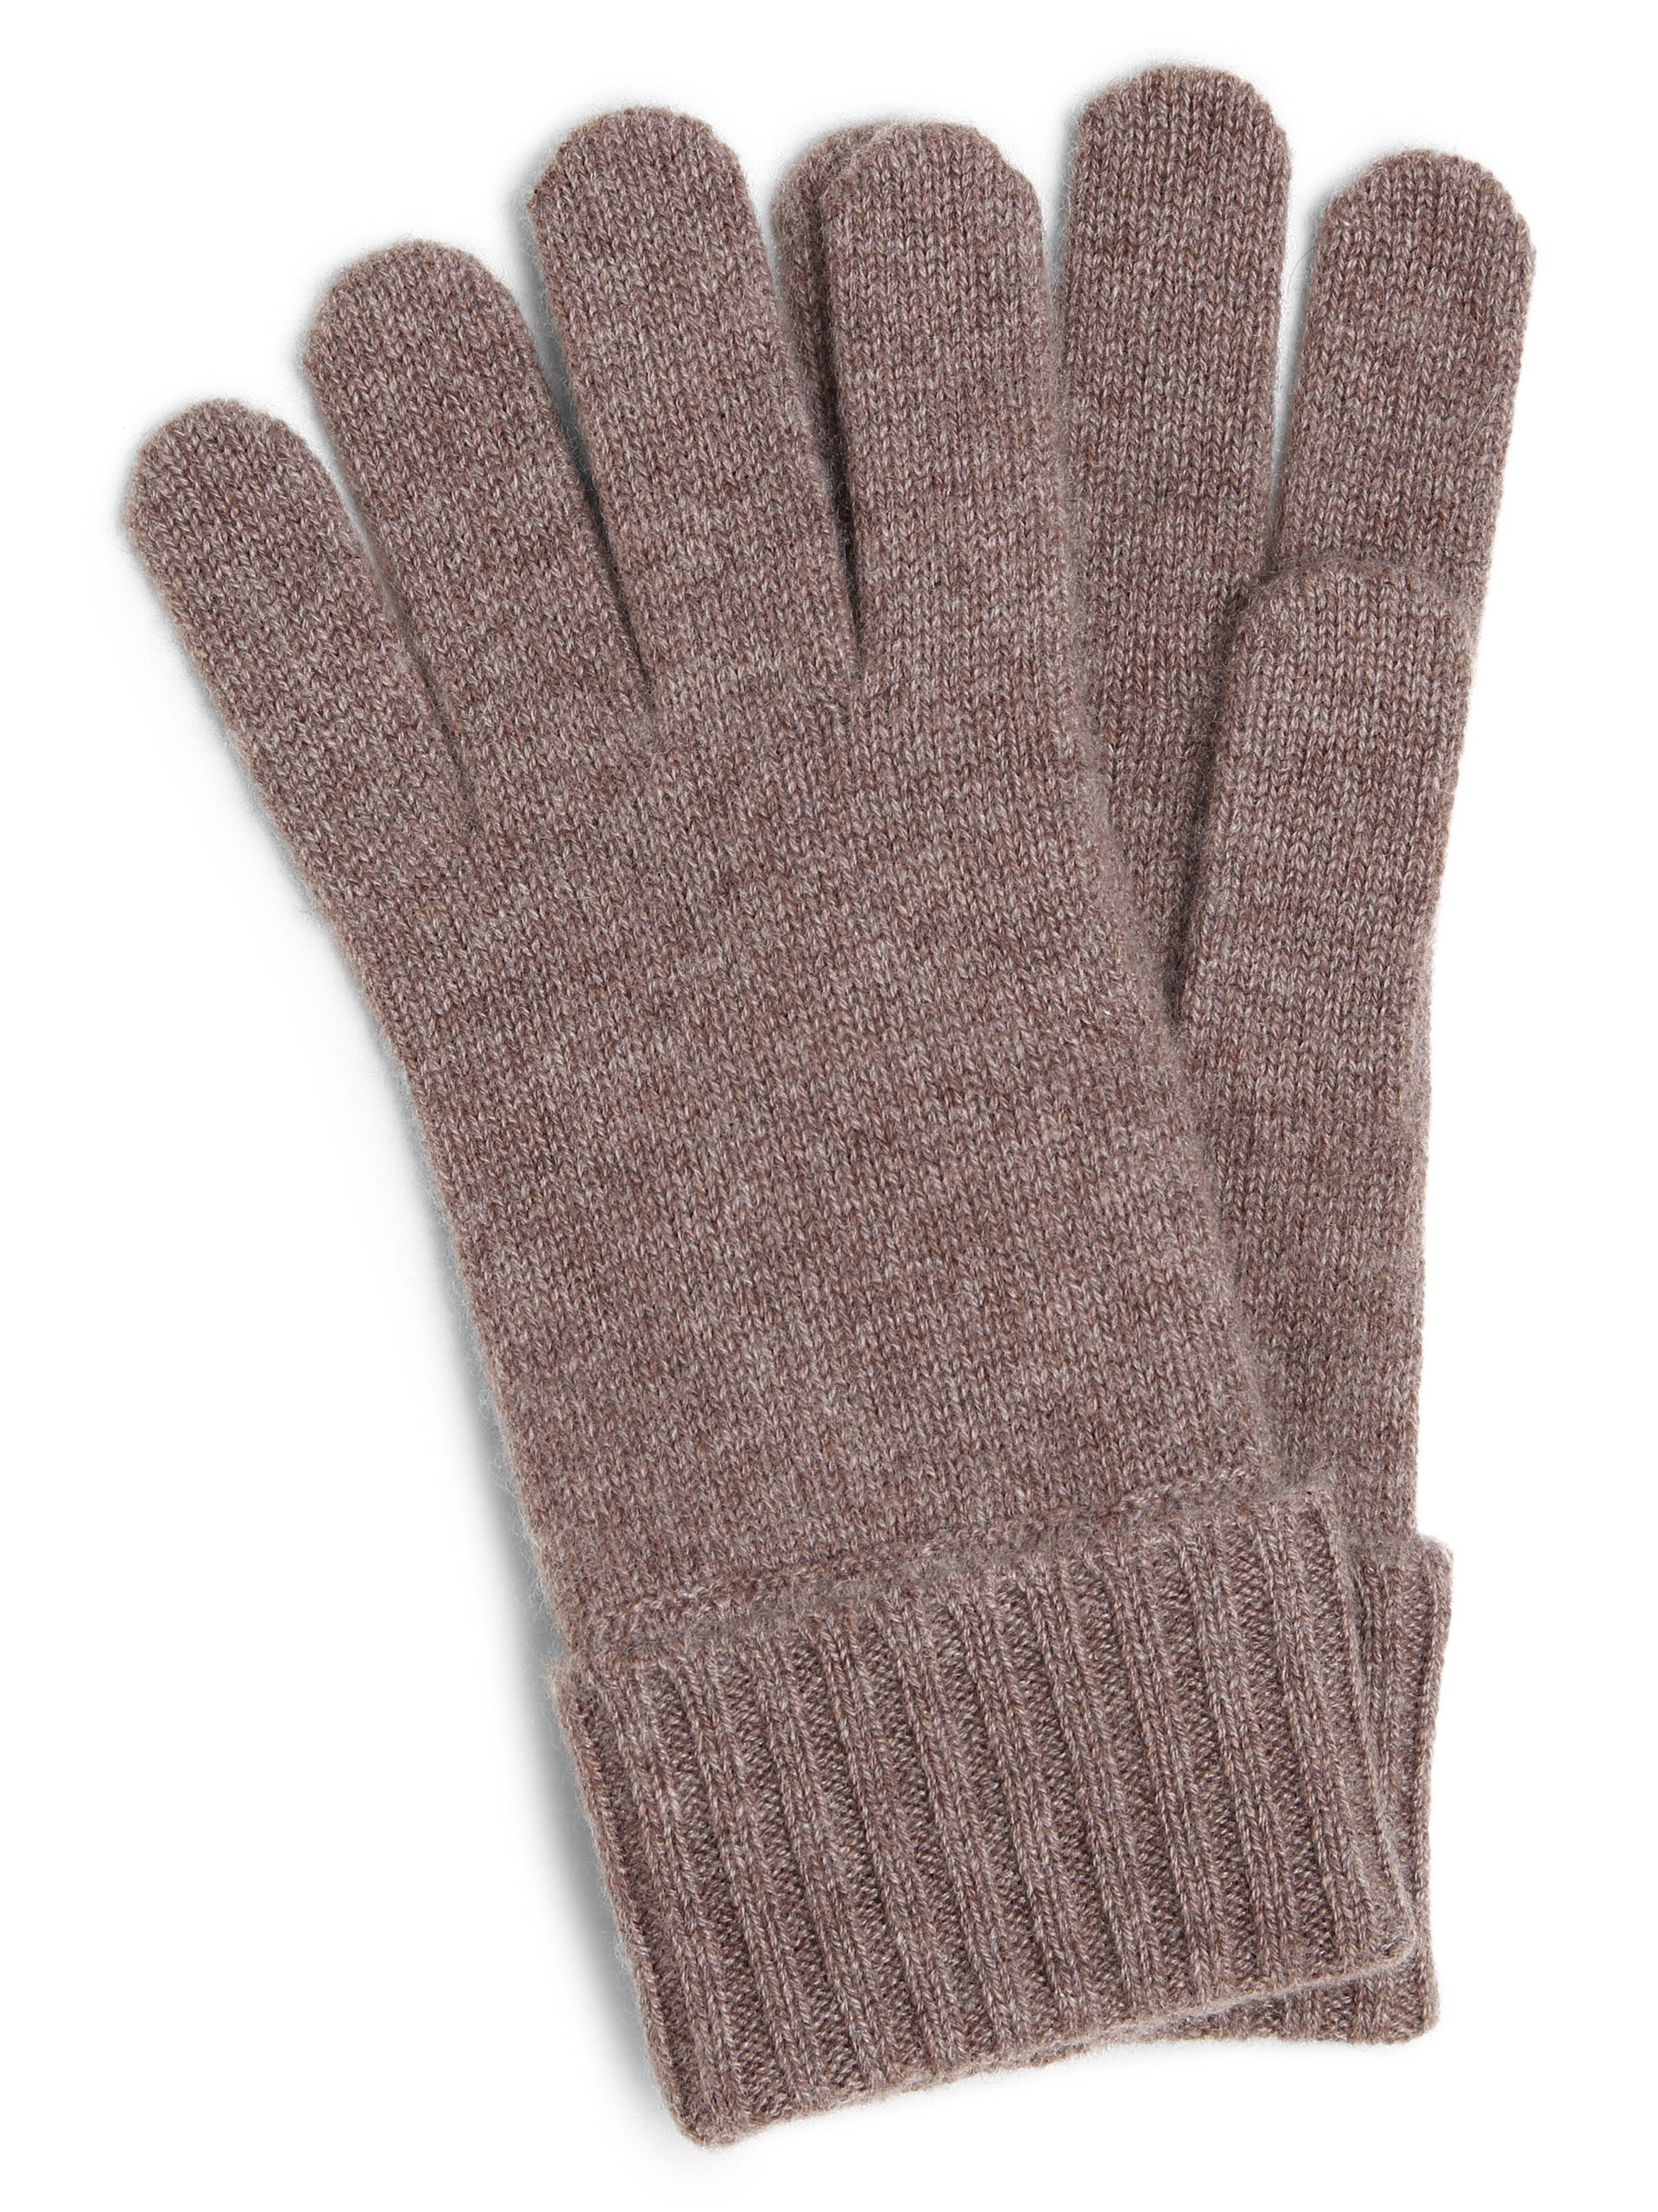 Marie Lund Baumwollhandschuhe taupe | Handschuhe